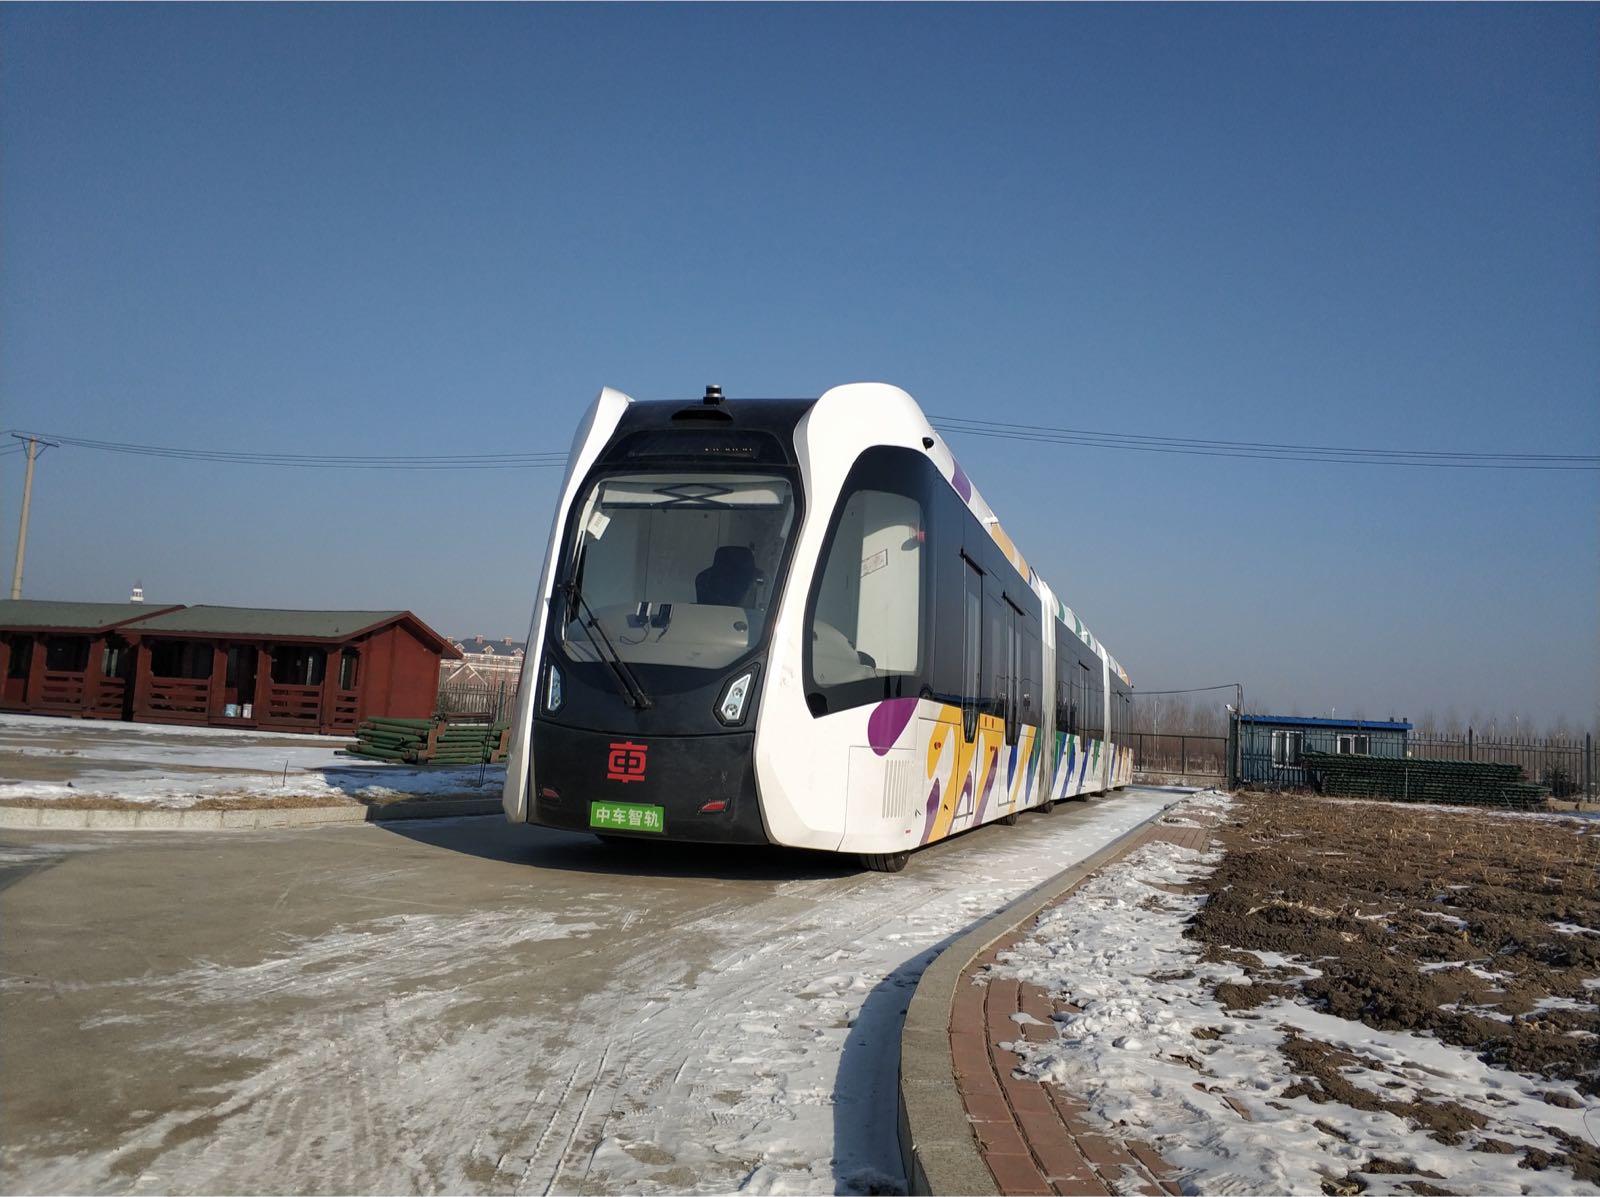 智轨电车在哈尔滨进行严寒测试 整体运行状况良好